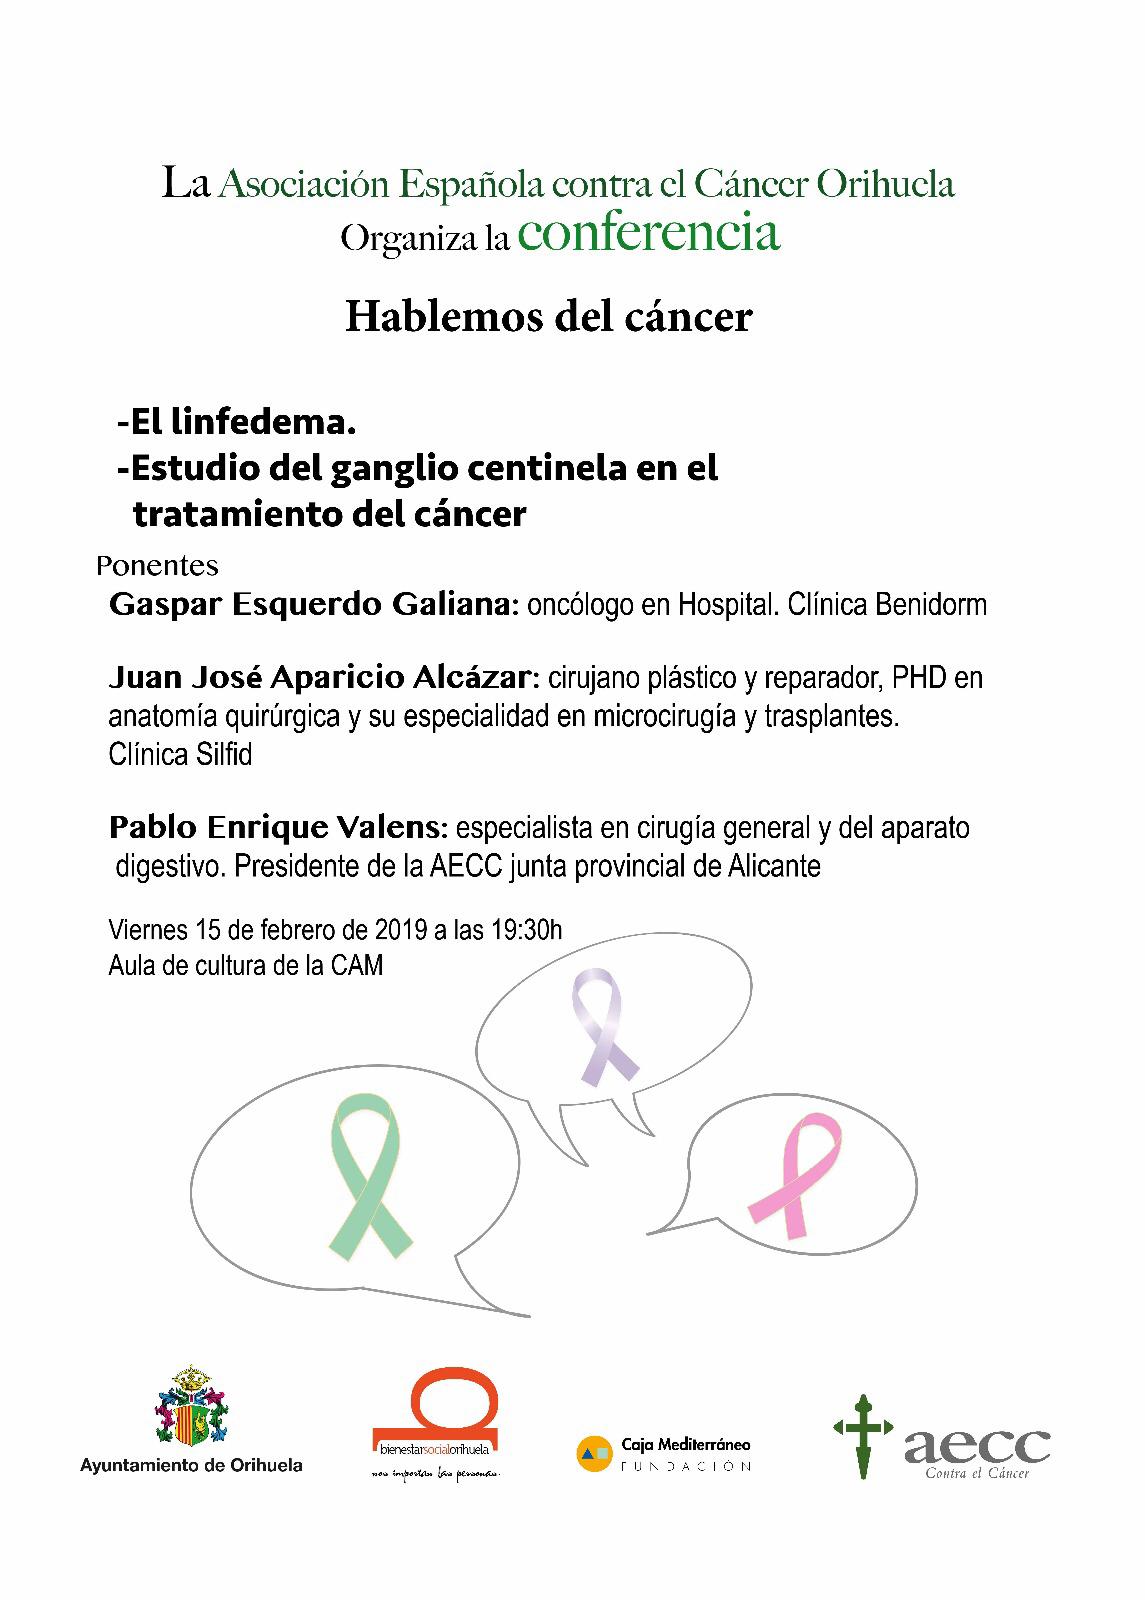 La AECC de Orihuela organiza la conferencia "Hablemos del cáncer" 7